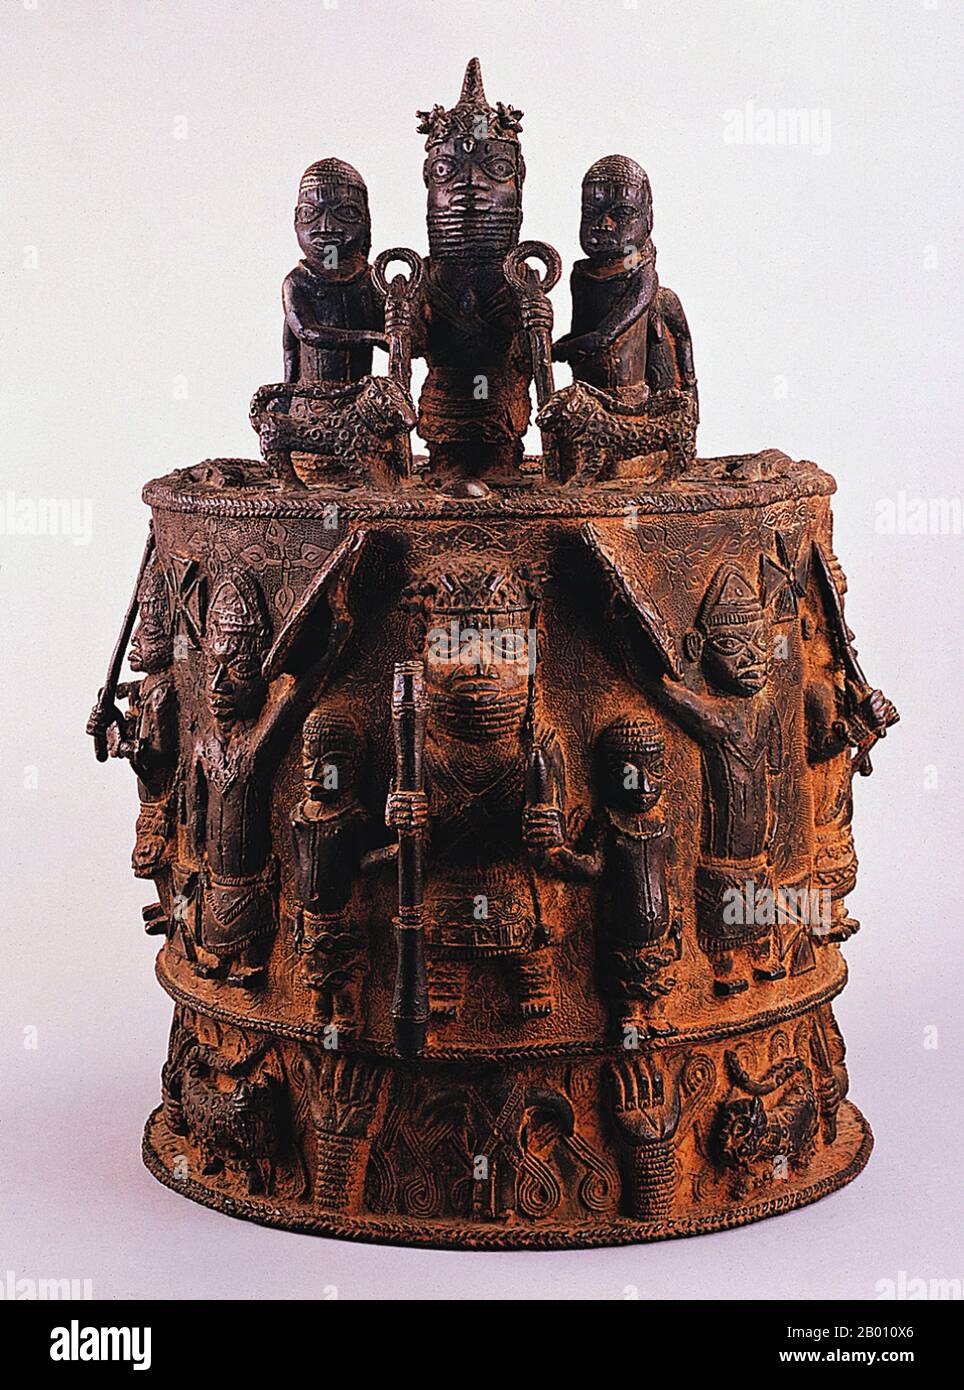 Nigeria: Un altar Edo de bronce del Reino de Benín,17th al siglo 18th. El Imperio de Benin (1440–1897) fue un estado africano pre-colonial en lo que ahora es Nigeria moderna. No debe confundirse con el país de hoy en día llamado Benin (y anteriormente llamado Dahomey). Foto de stock